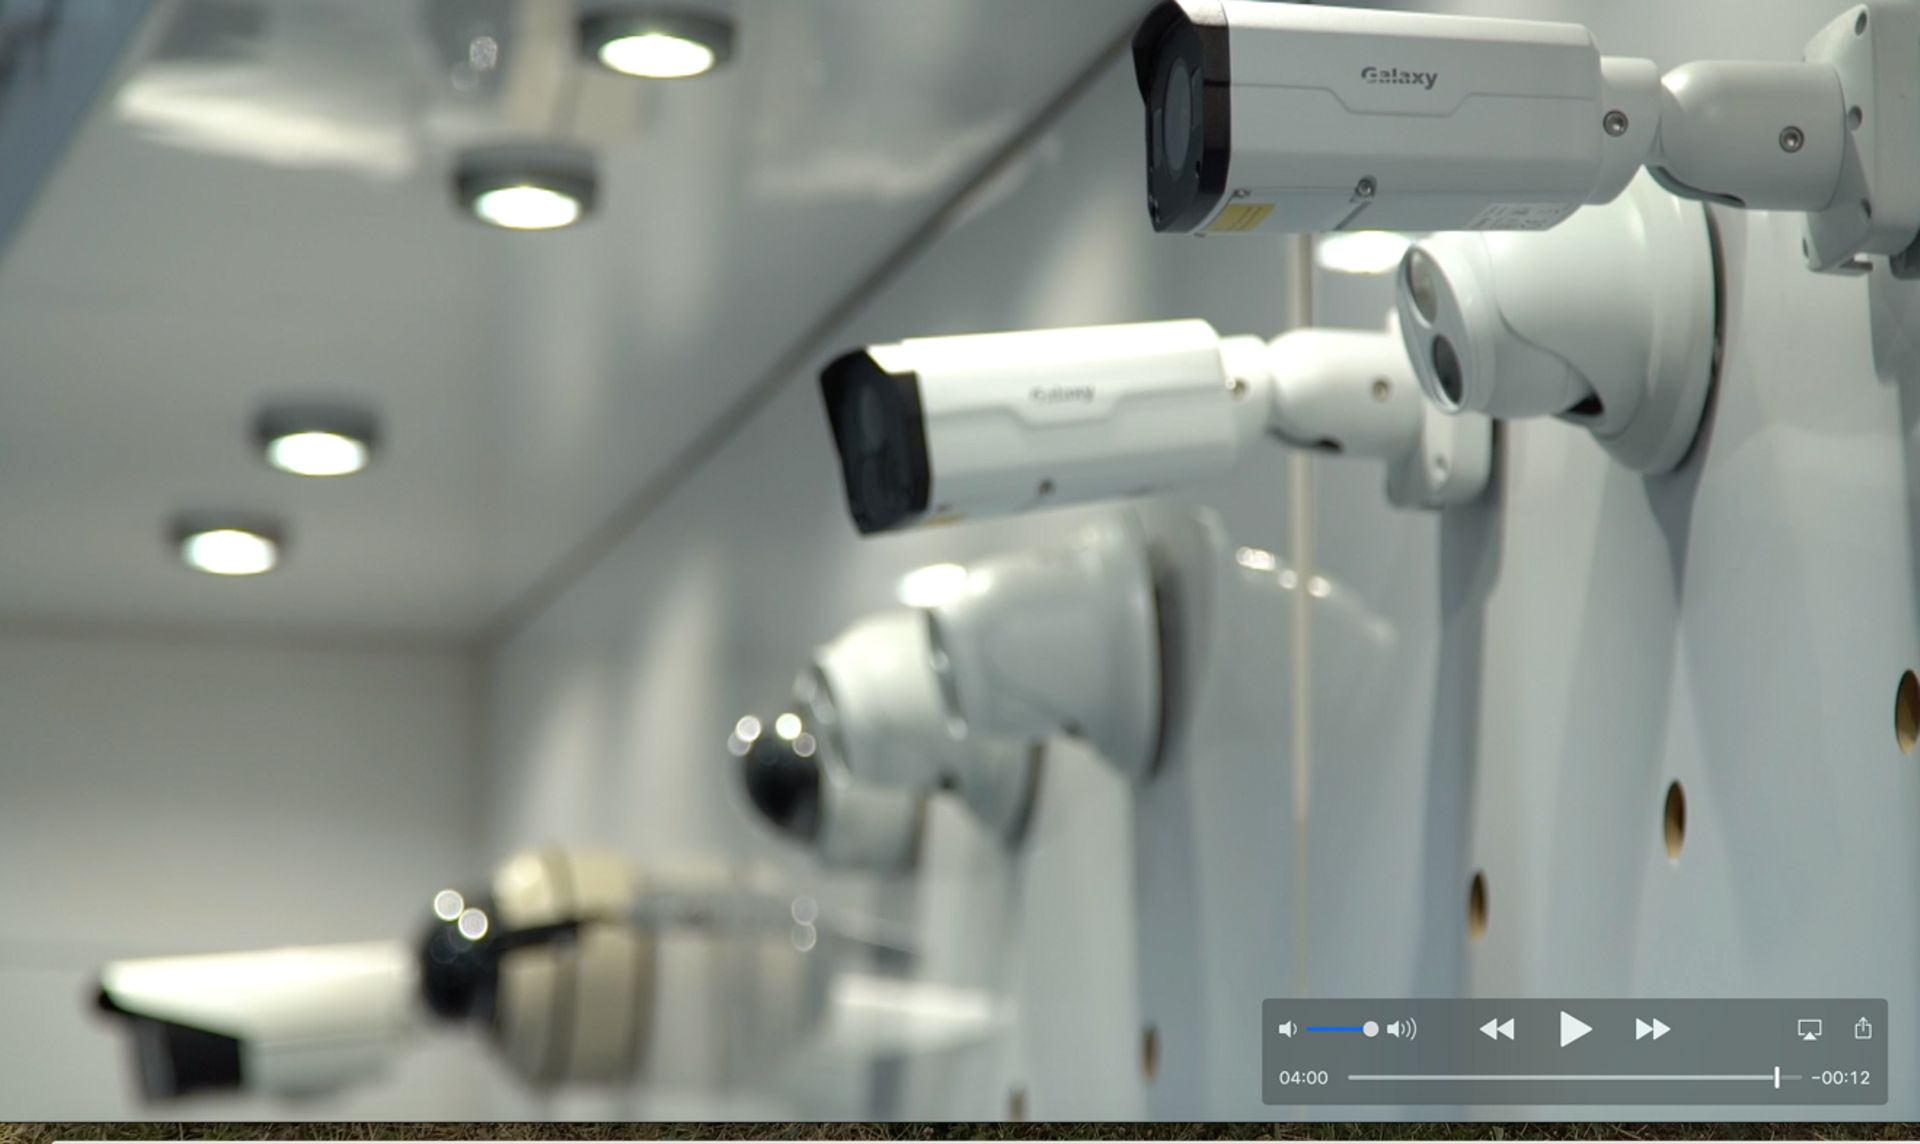 Les caméras de surveillance sont de plus en plus utilisées, tant dans l’espace public que privé. Les magasins spécialisés attirent davantage de clients.